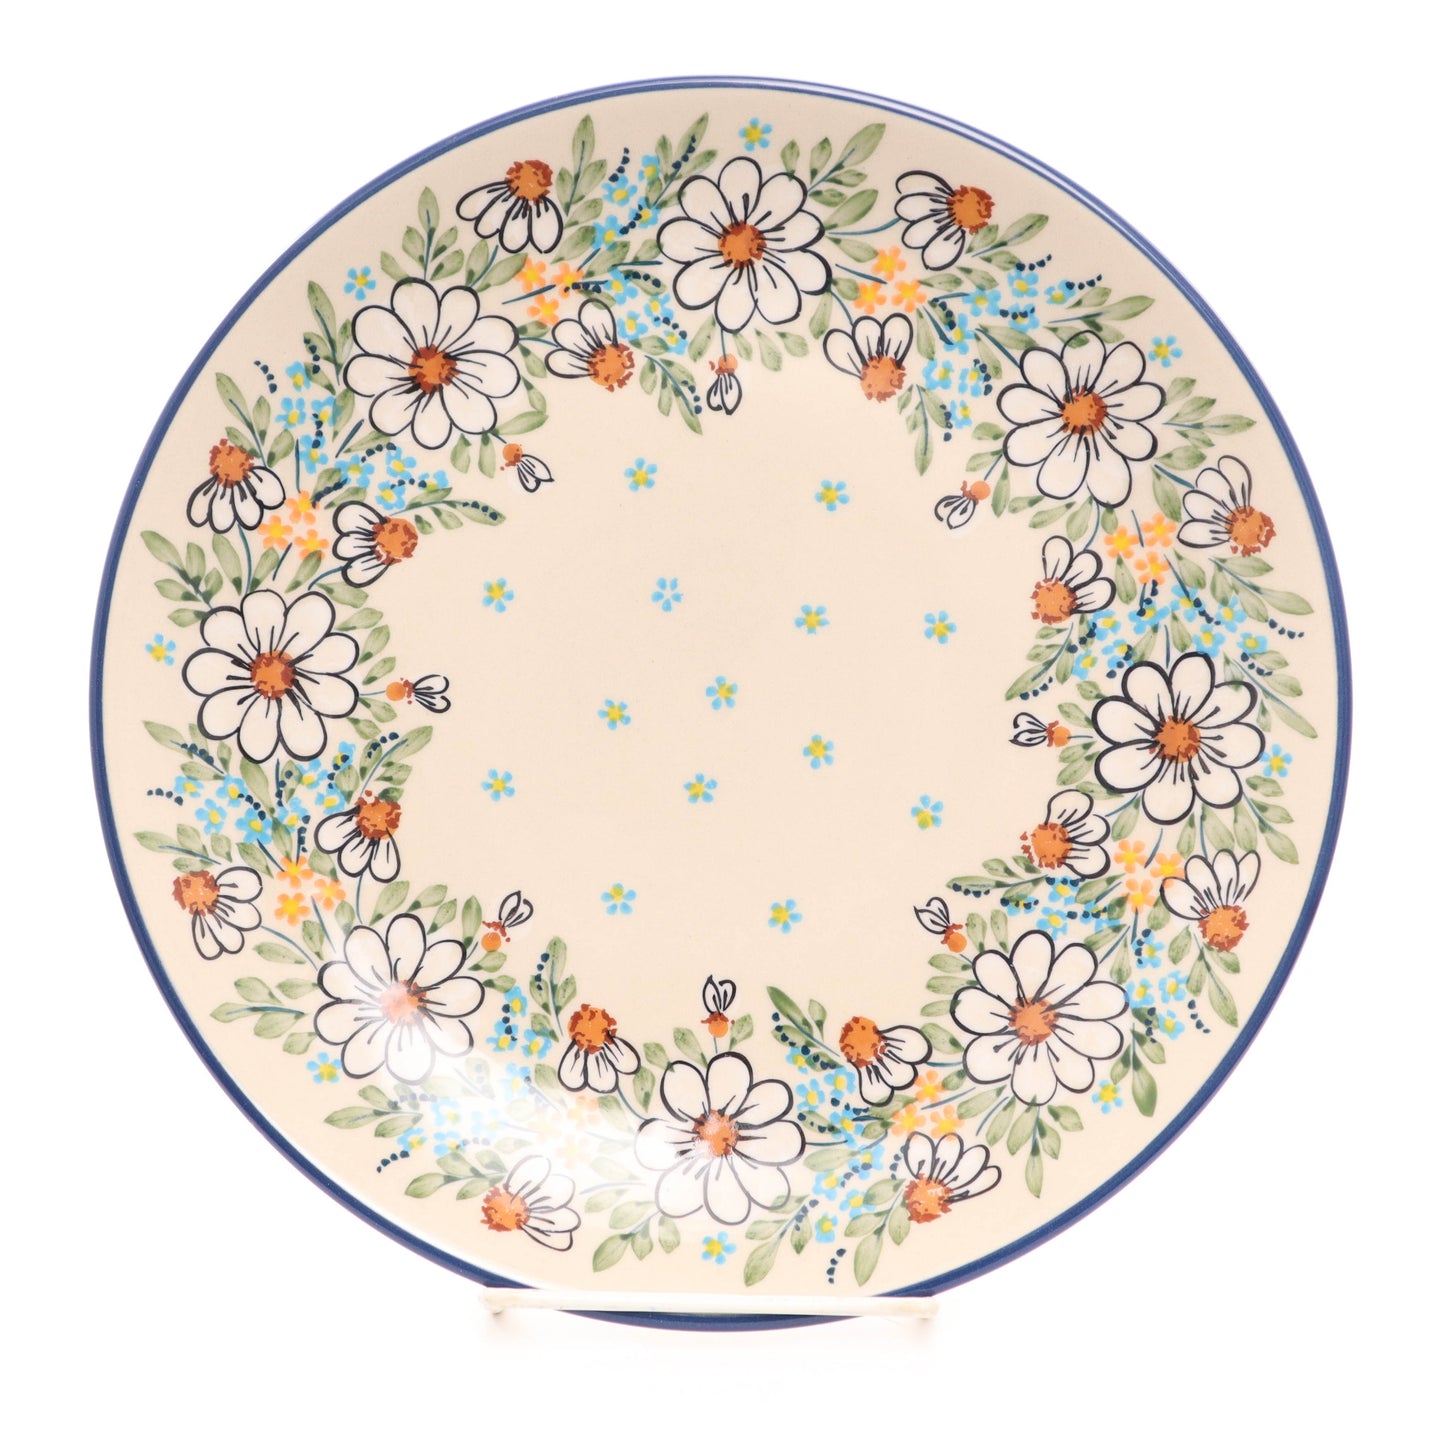 10" Dinner Plate.  Pattern: White Daisy